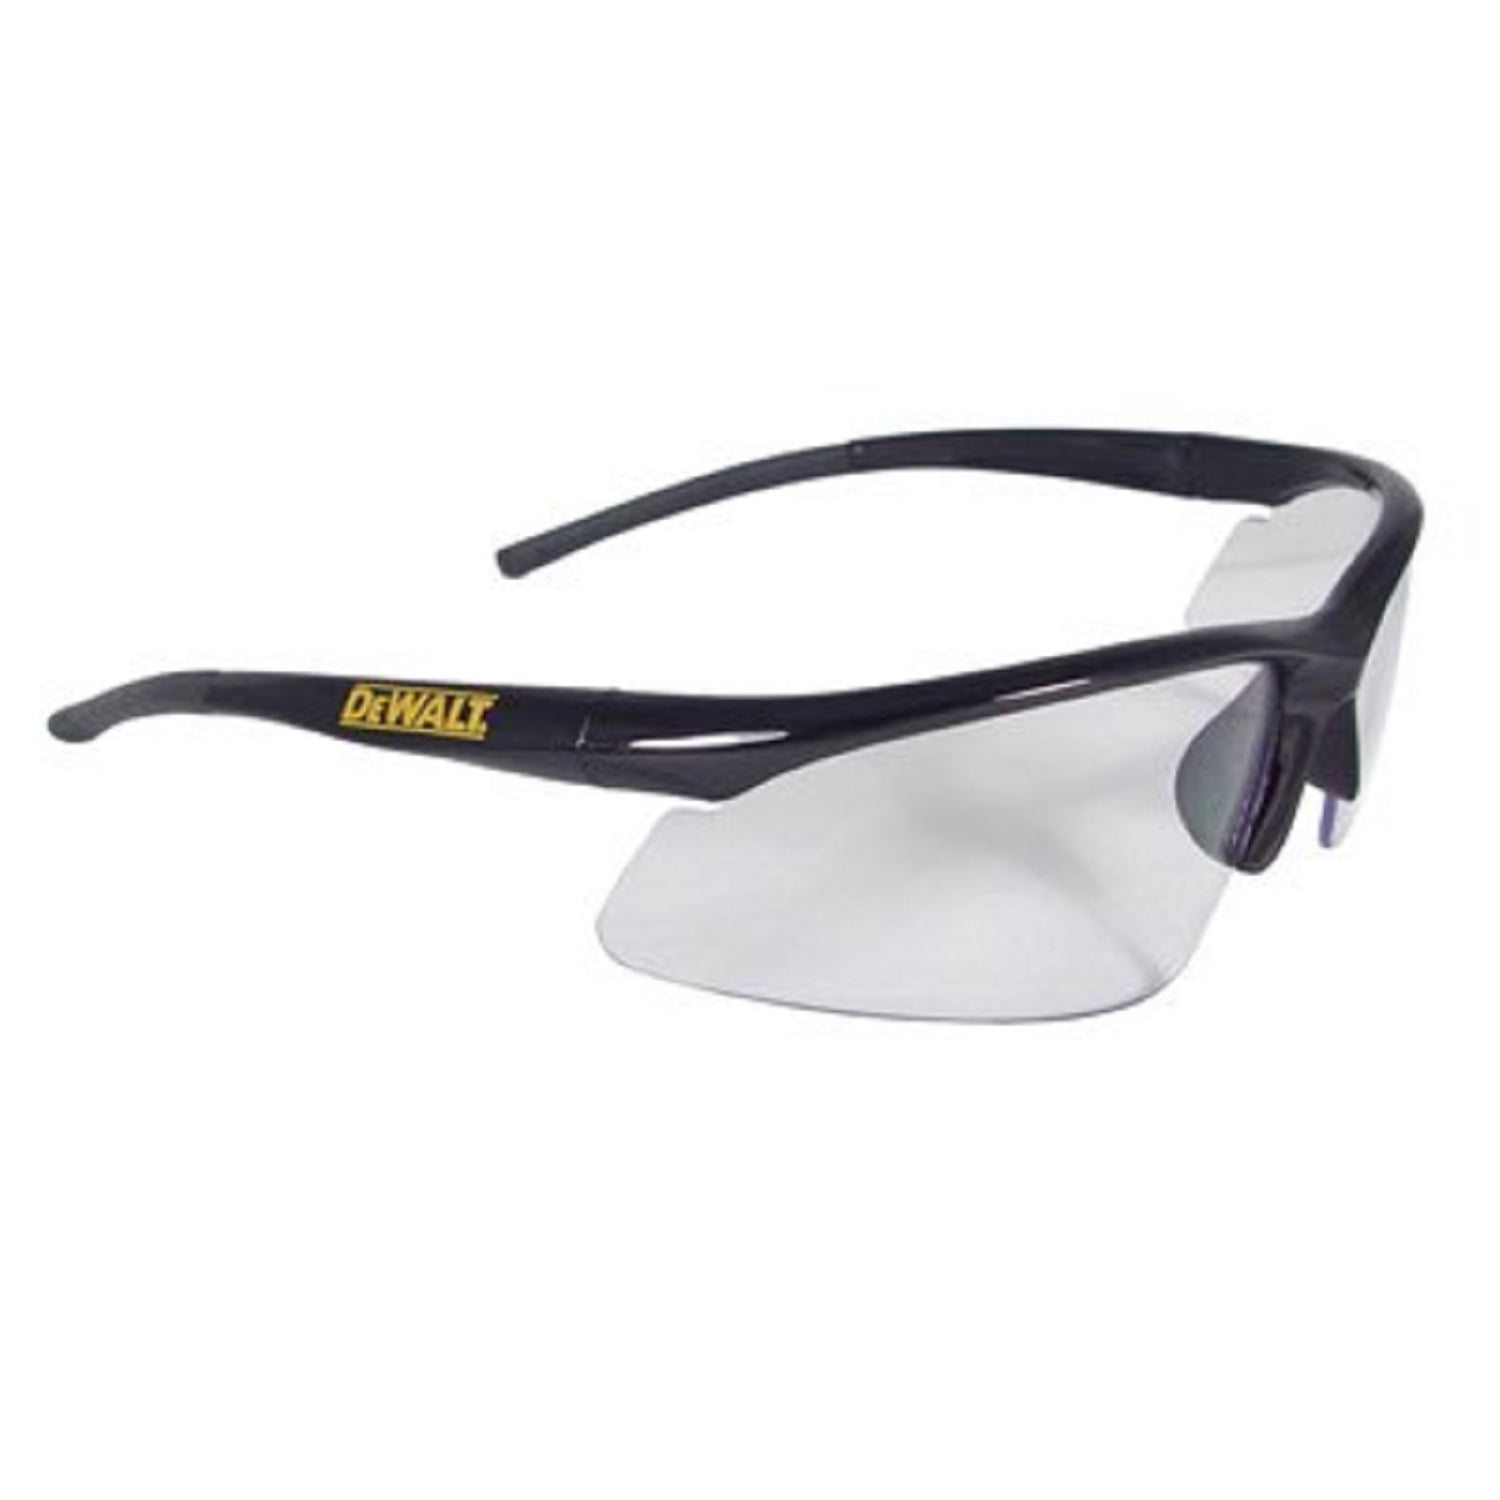 DEWALT Ventilator Safety Glasses With Black Frame and Smoke Lens ANSI Z87 for sale online 